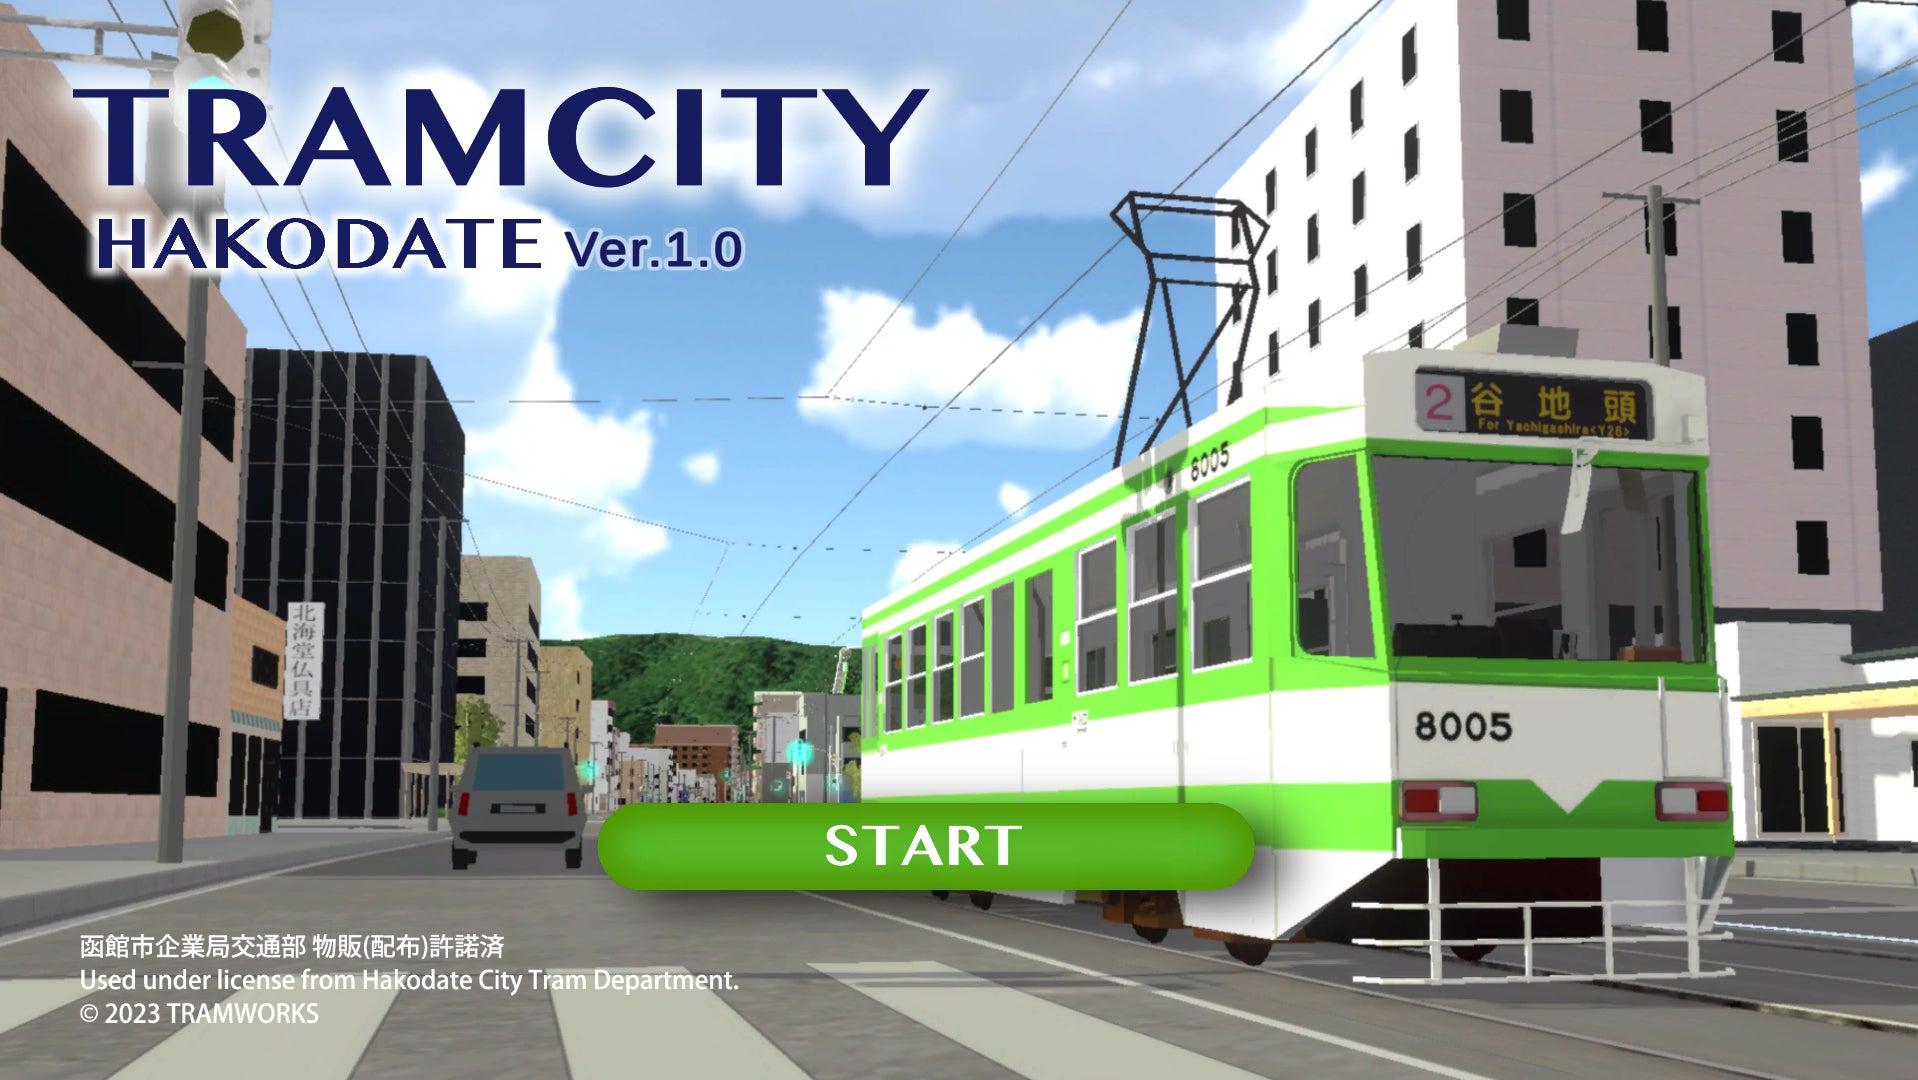 函館市電で新自動放送と電車運転ゲームにちなんだ貸切電車を運行、車庫内での運転体験会も開催